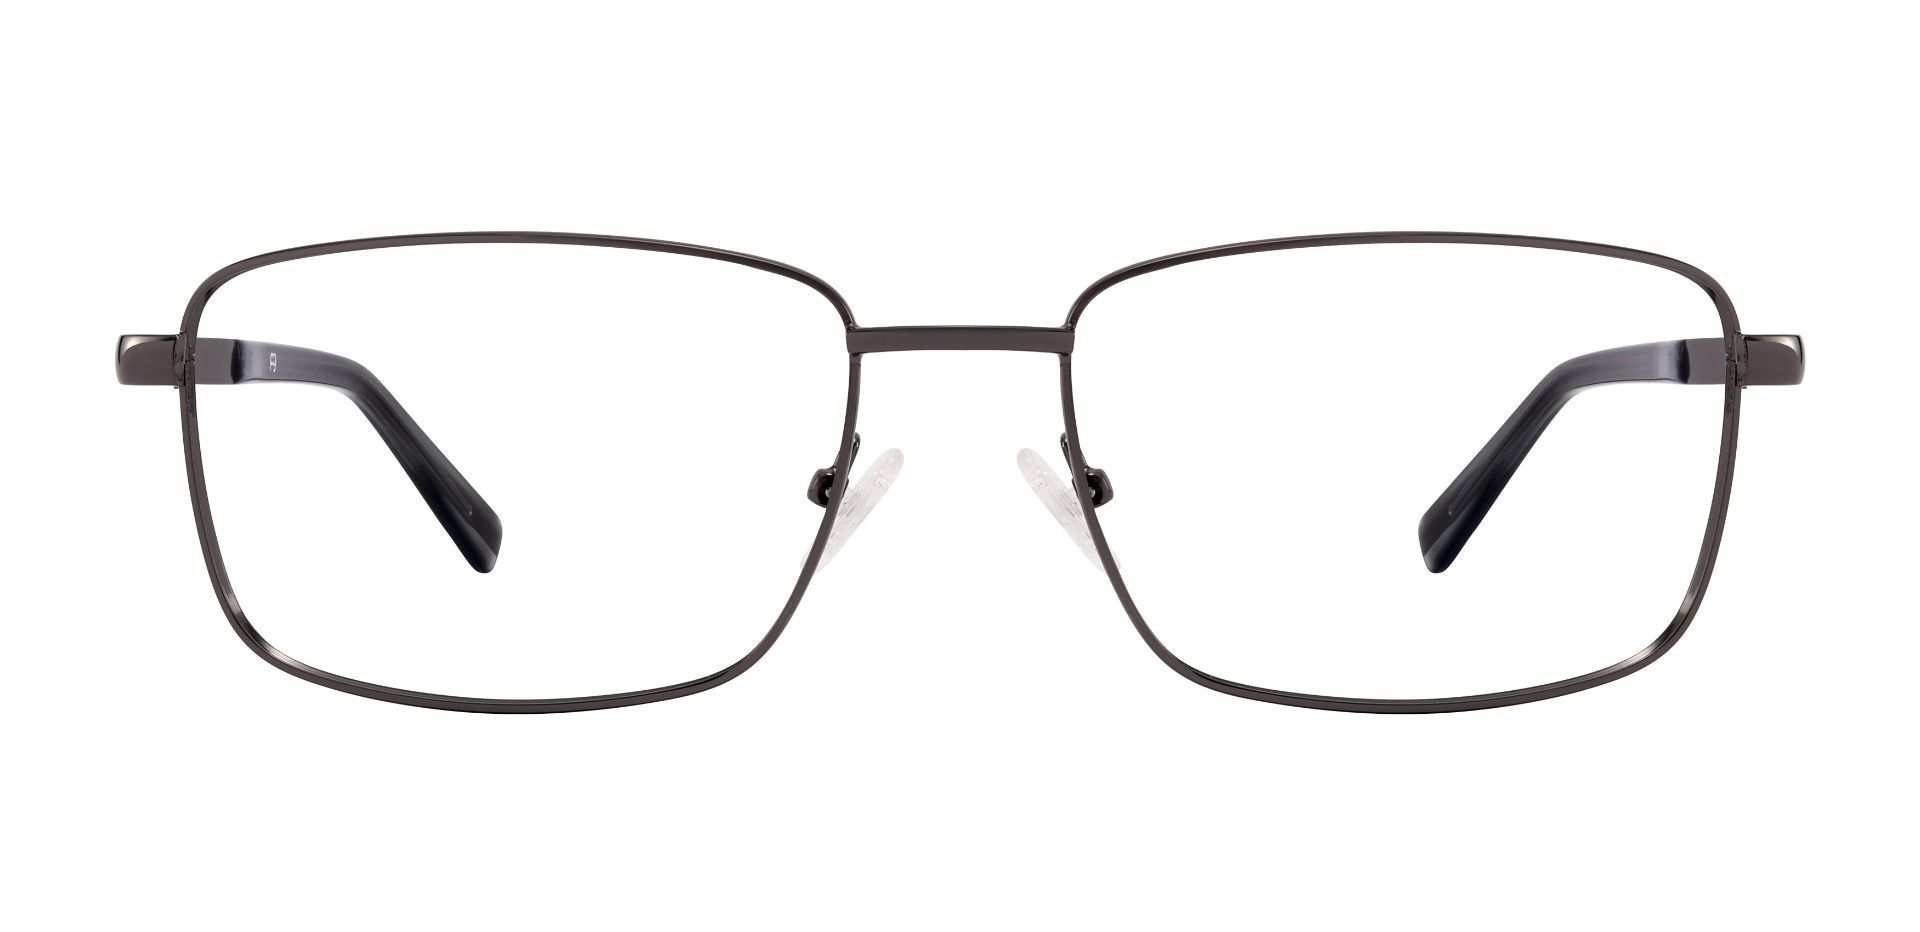 Marshall Rectangle Lined Bifocal Glasses - Gray